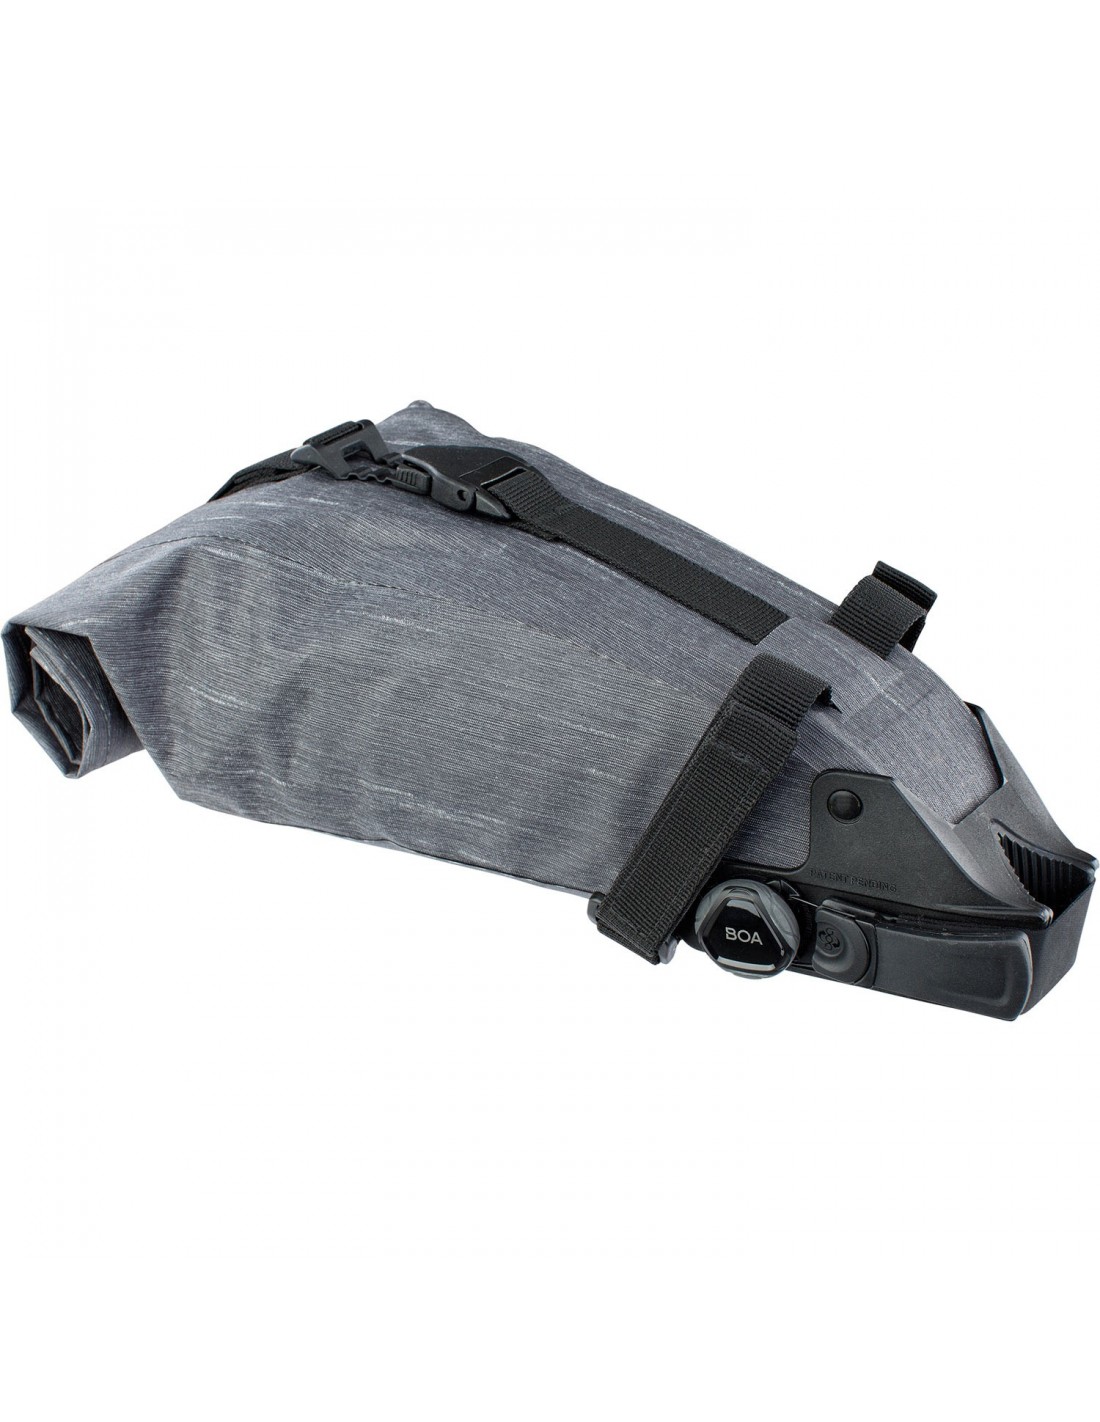 Evoc SEAT PACK Boa® Gr. M - Carbon Grey Taschenfarbe - Grau, Taschenvariante - Satteltasche, von Evoc